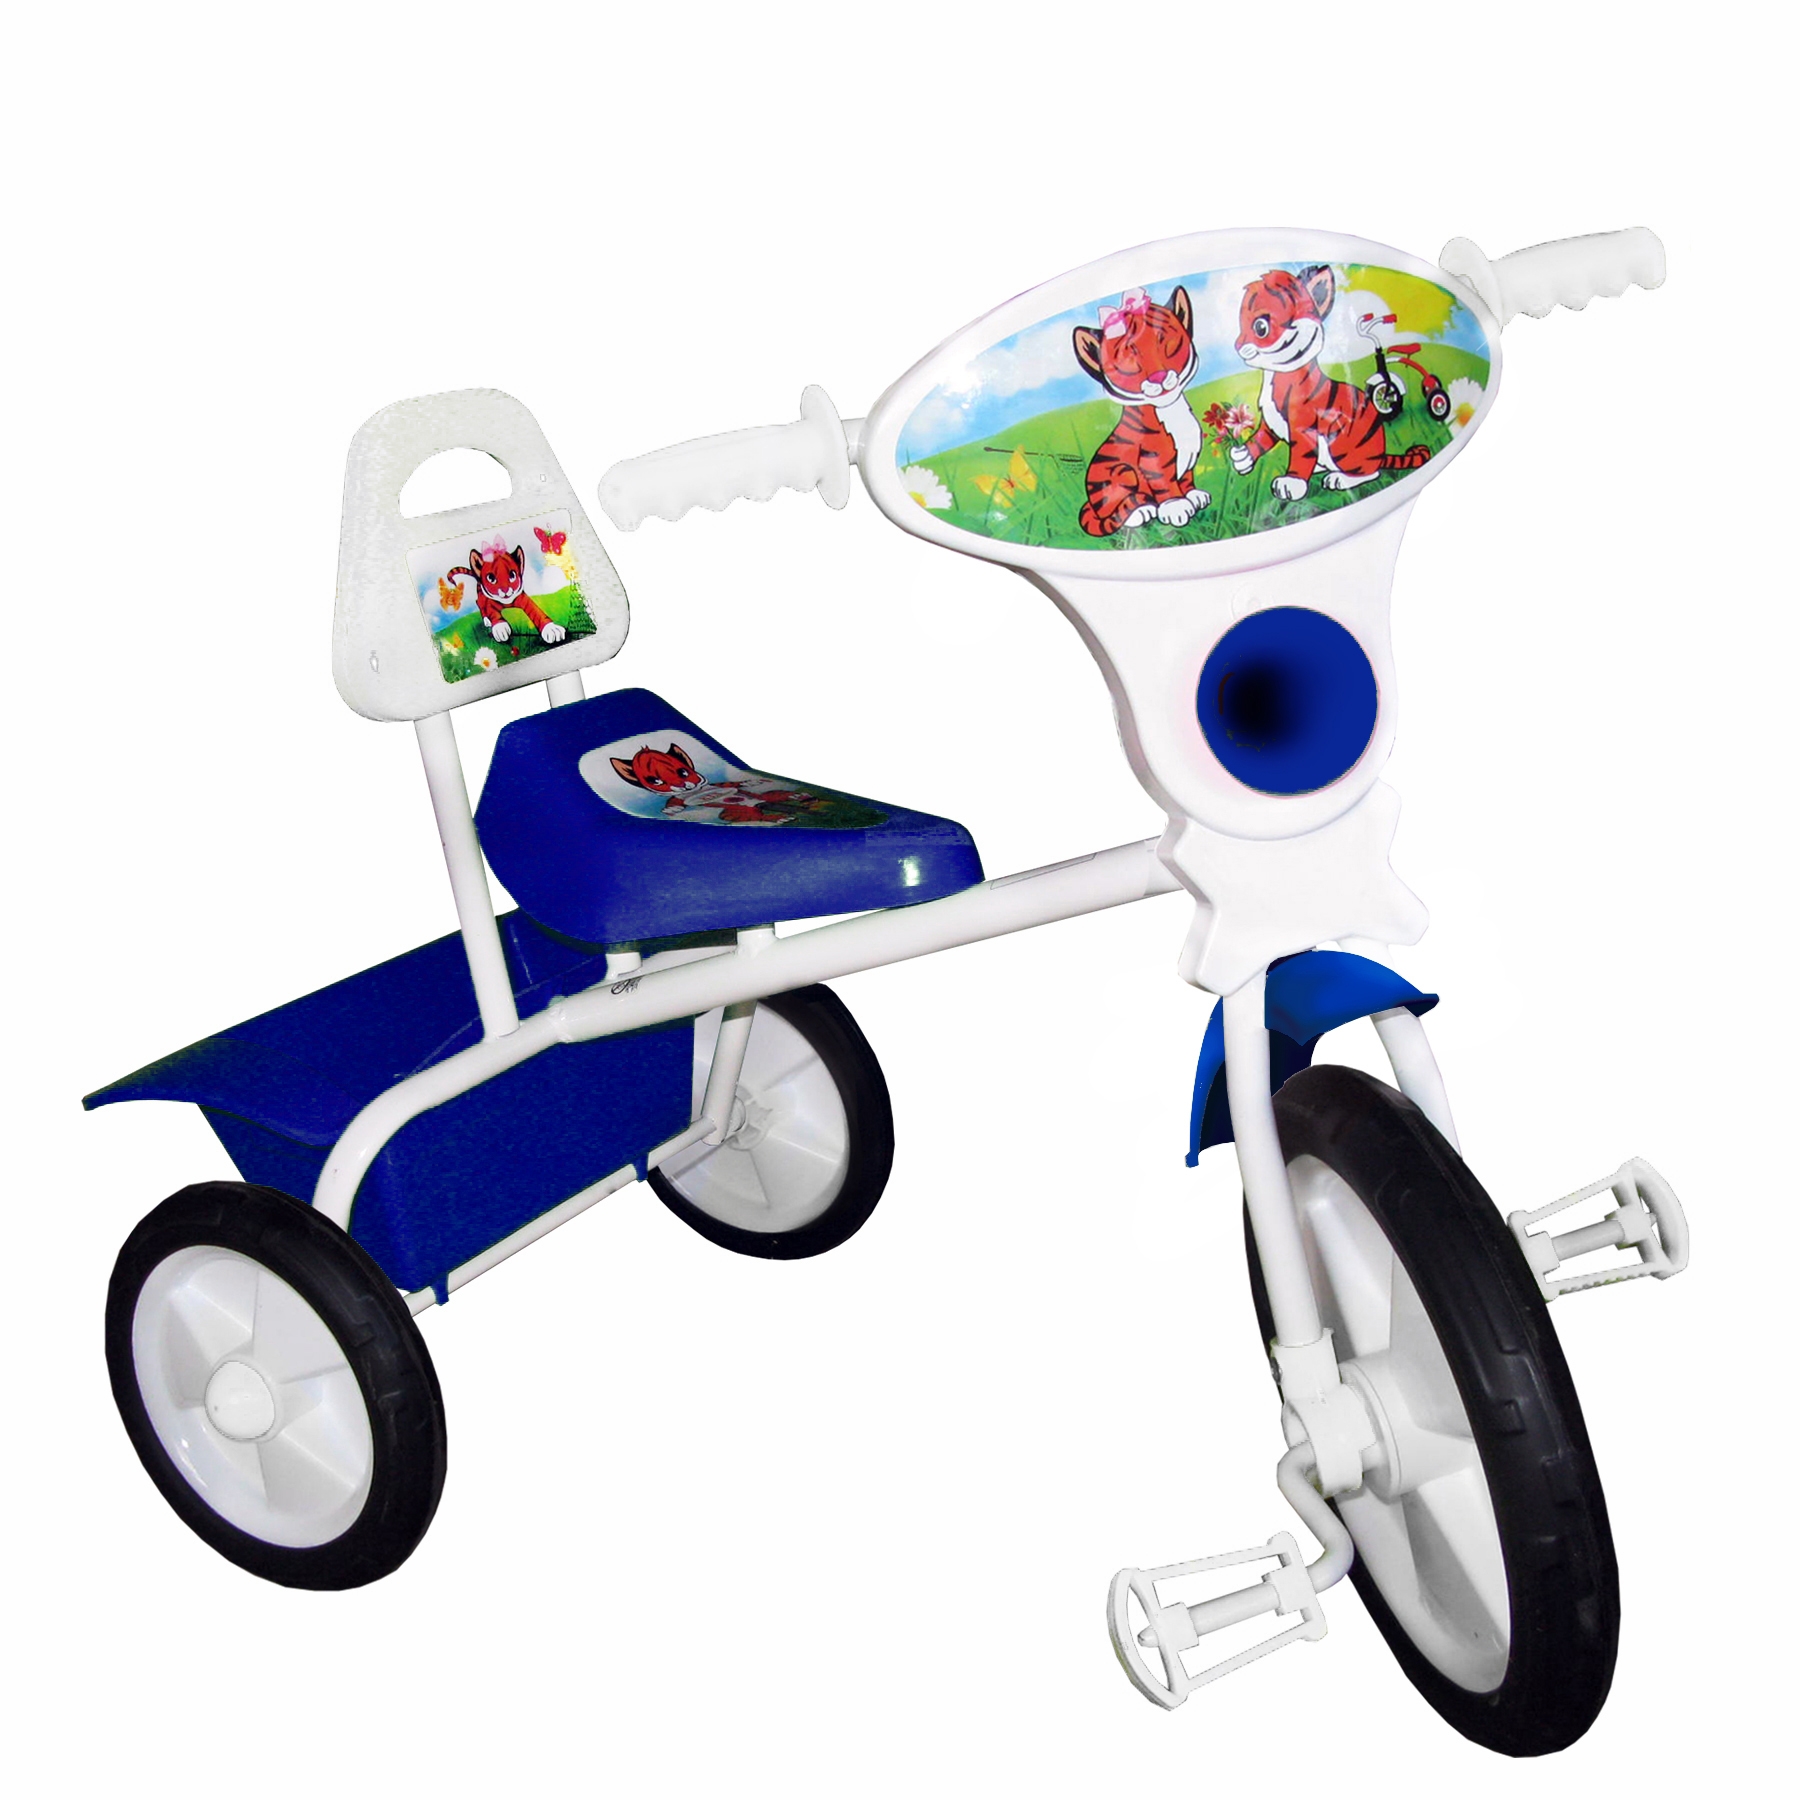 Магазины детские трехколесные велосипеды. Велосипед малыш 02п голубой. Велосипед малыш 06п голубой. Детский трехколесный велосипед малыш 06п. Велосипед трёхколёсный детский бейби хит.